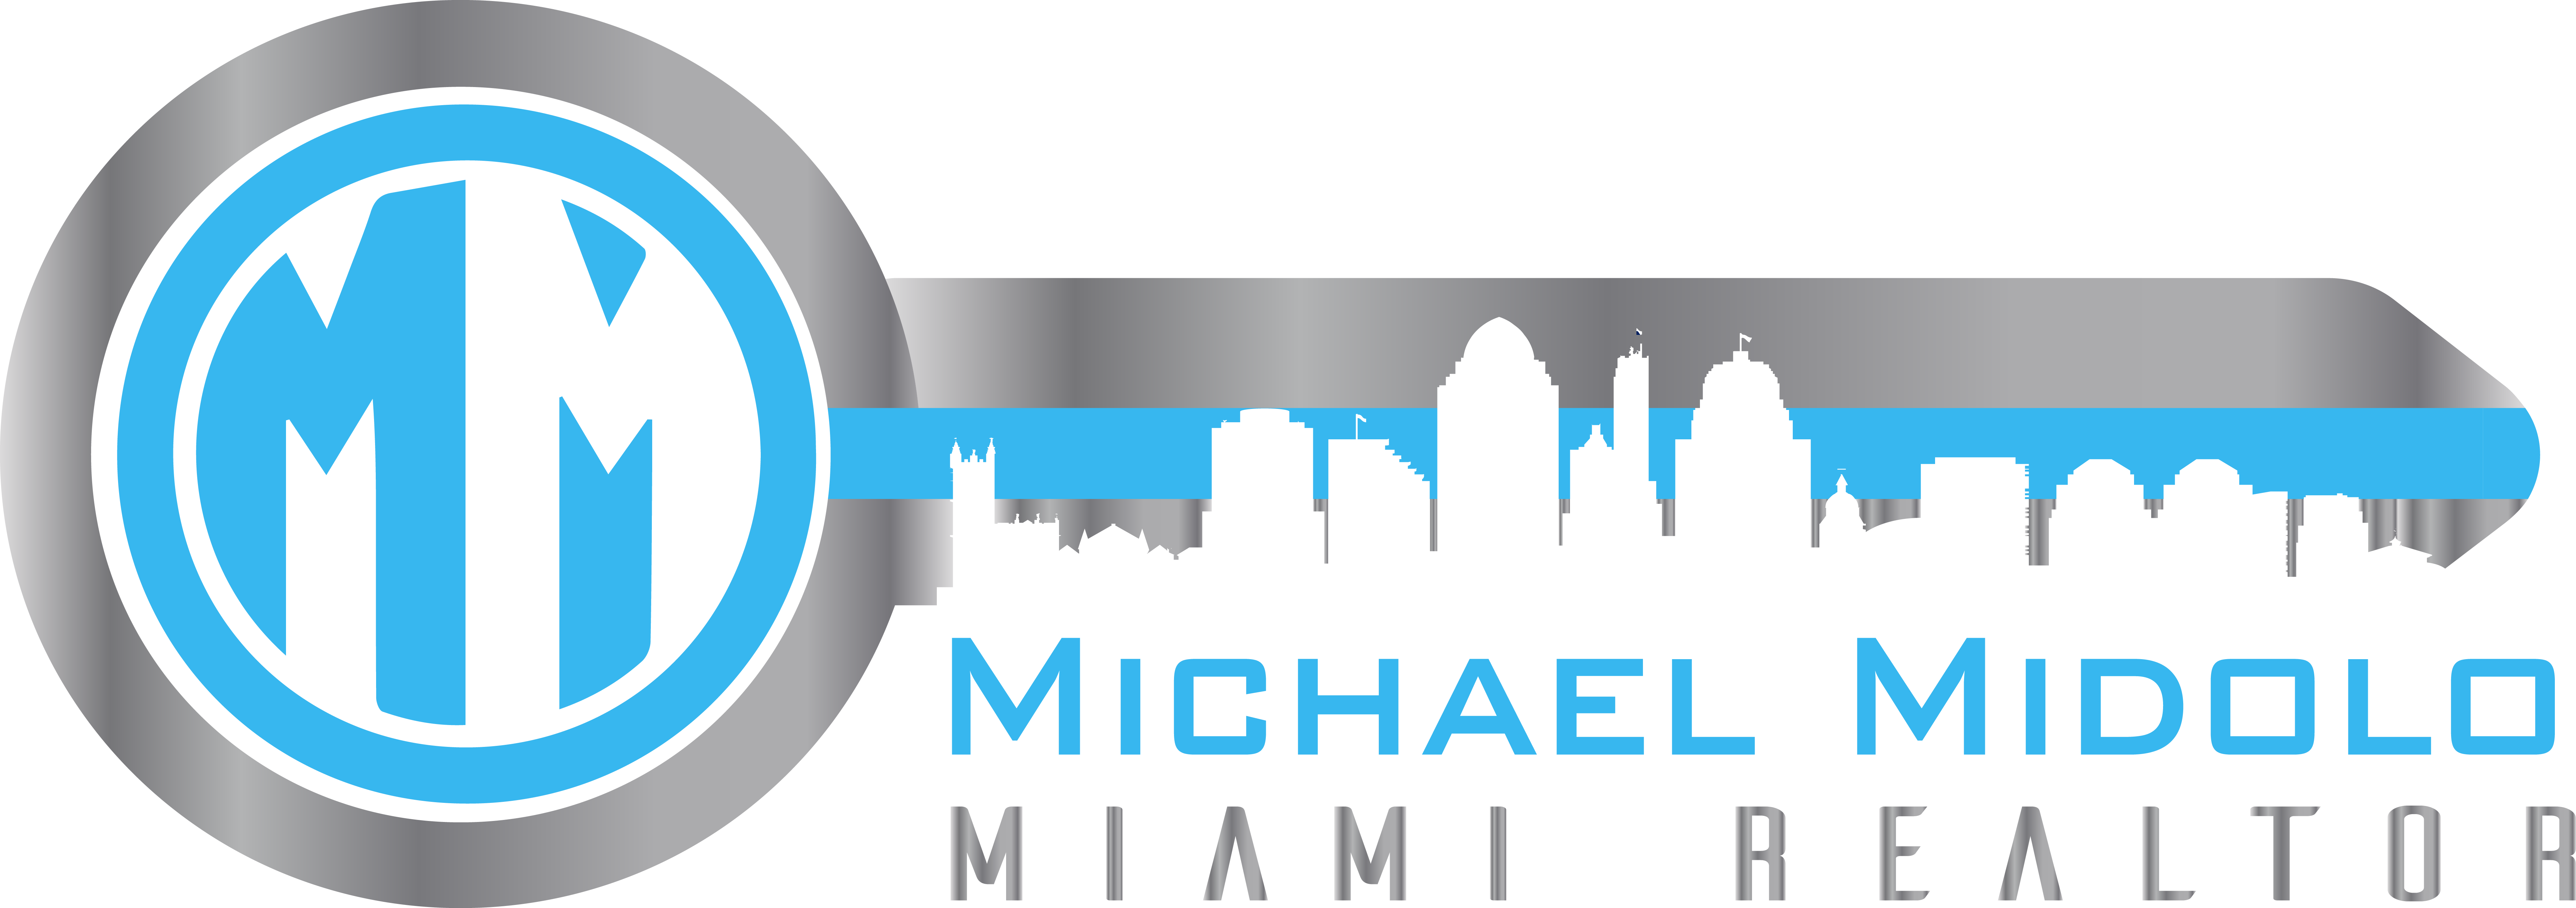 Mm - Miami - Miami Beach (7548x2660), Png Download